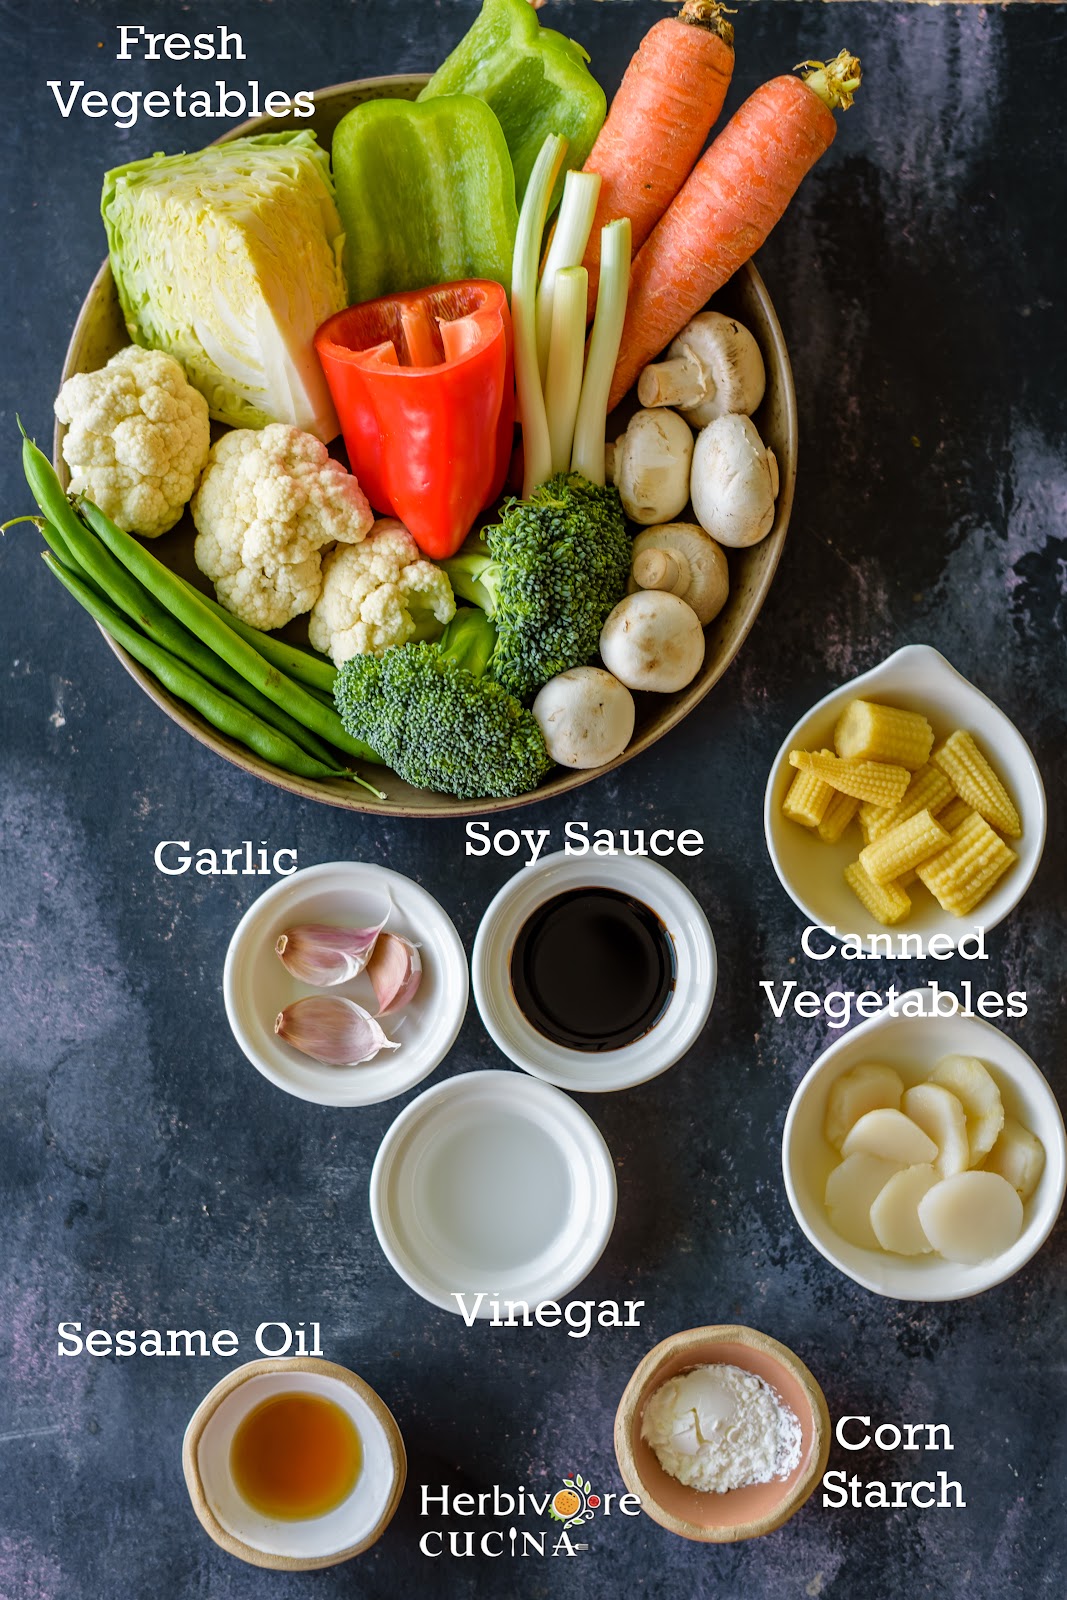 Vegetable stir fry ingredients; vegetables, sauces, seasonings and oil arranged in bowls on a black board. 